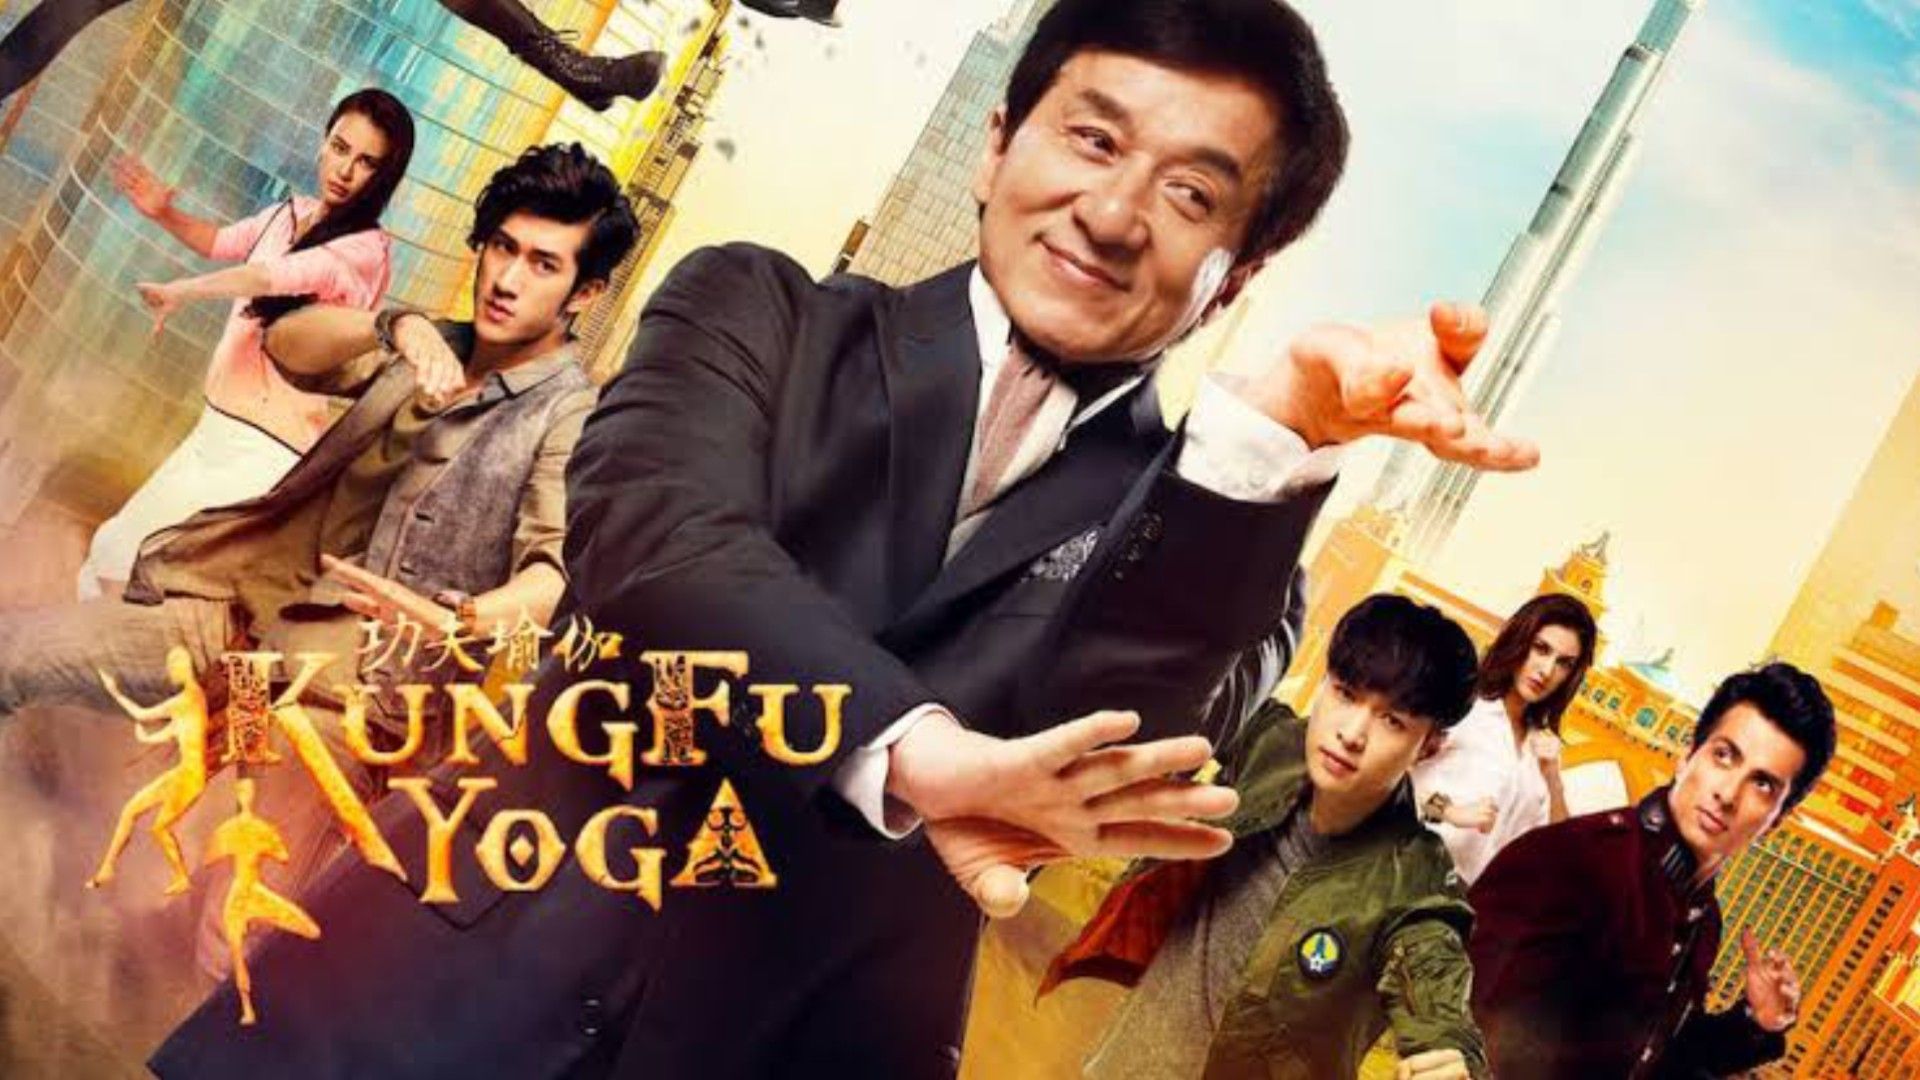 Kung Fu Yoga - Filme Completo Dublado - Vídeo Dailymotion